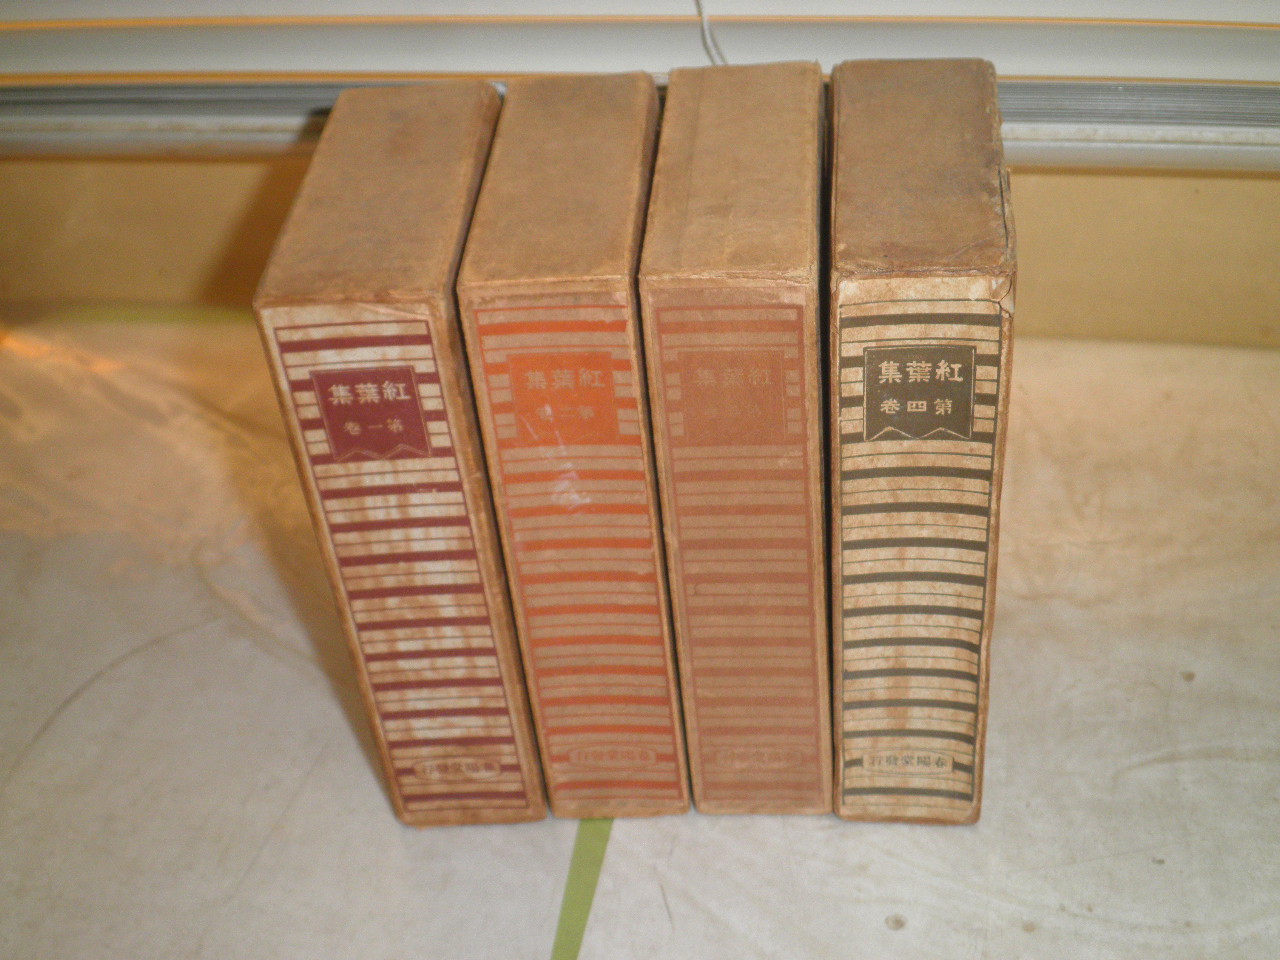 紅葉集 全4冊セット 尾崎紅葉著 木版彩色1枚有 袖珍版 蔵印有 ヤケシミ